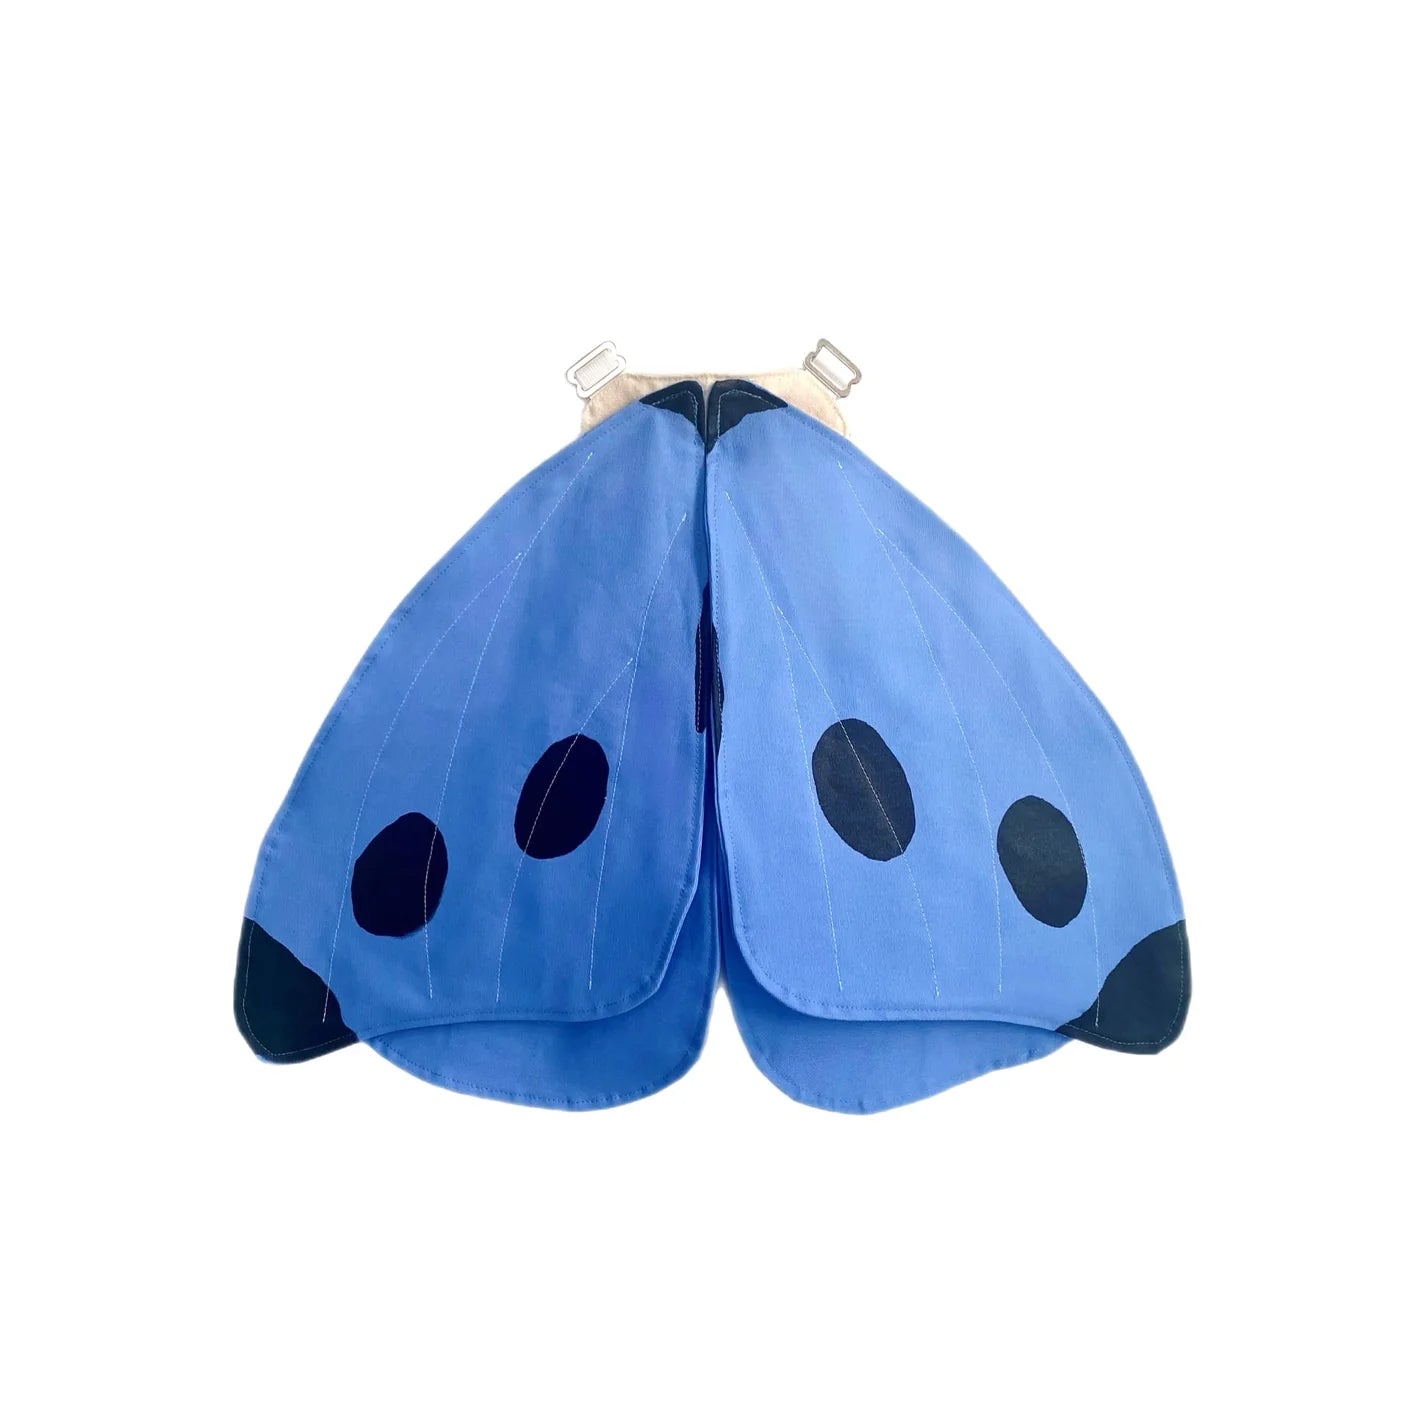 Alas de mariposa Azules